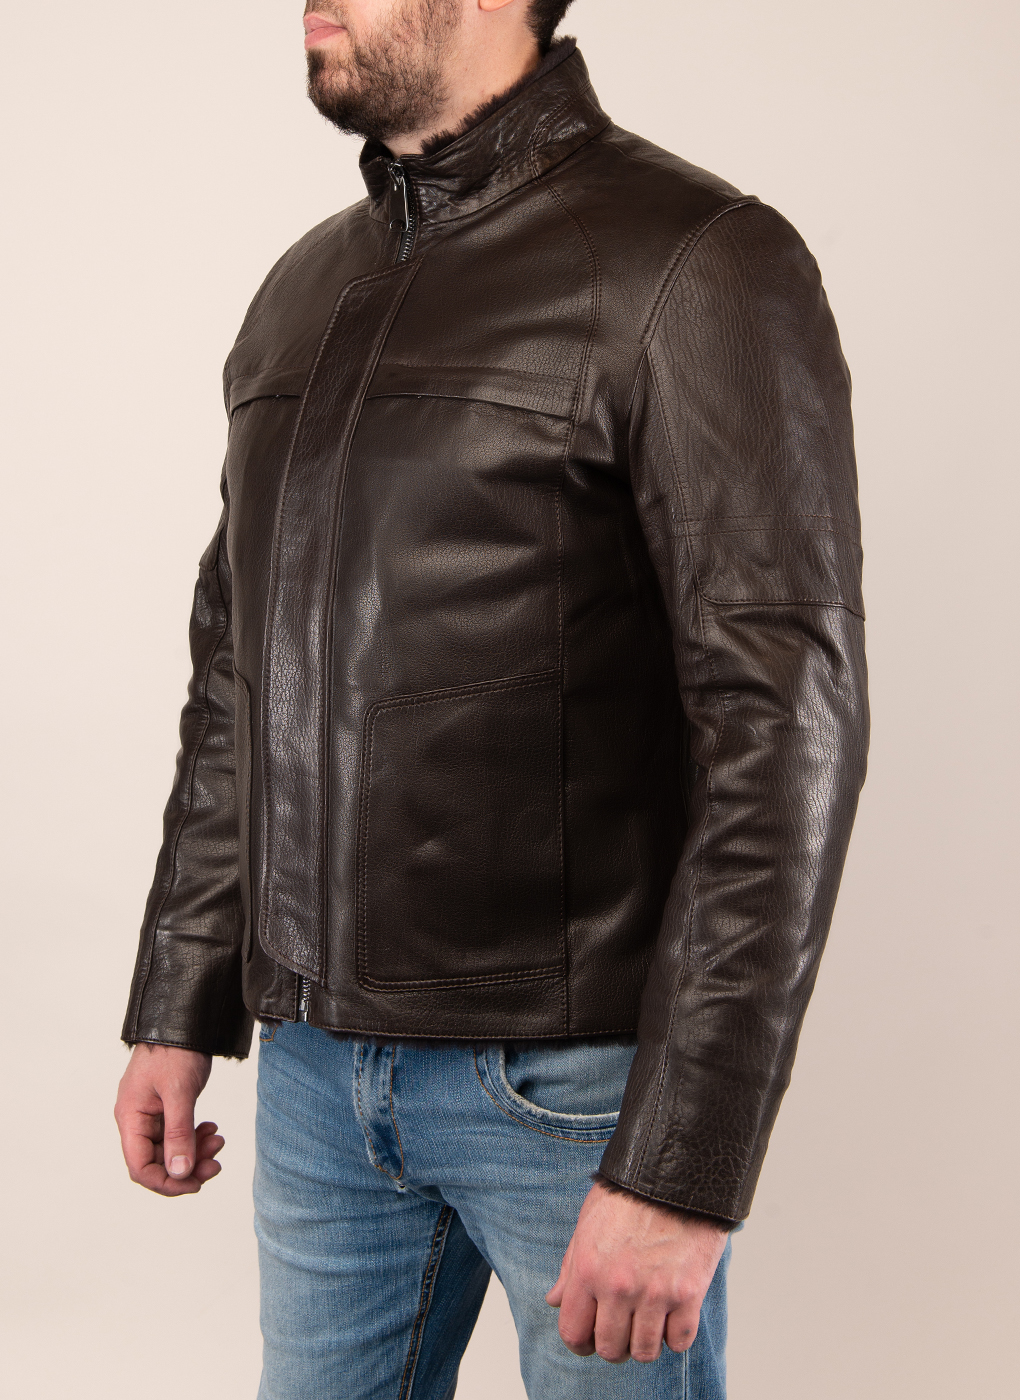 Кожаная куртка мужская Каляев 48960 коричневая 56 RU